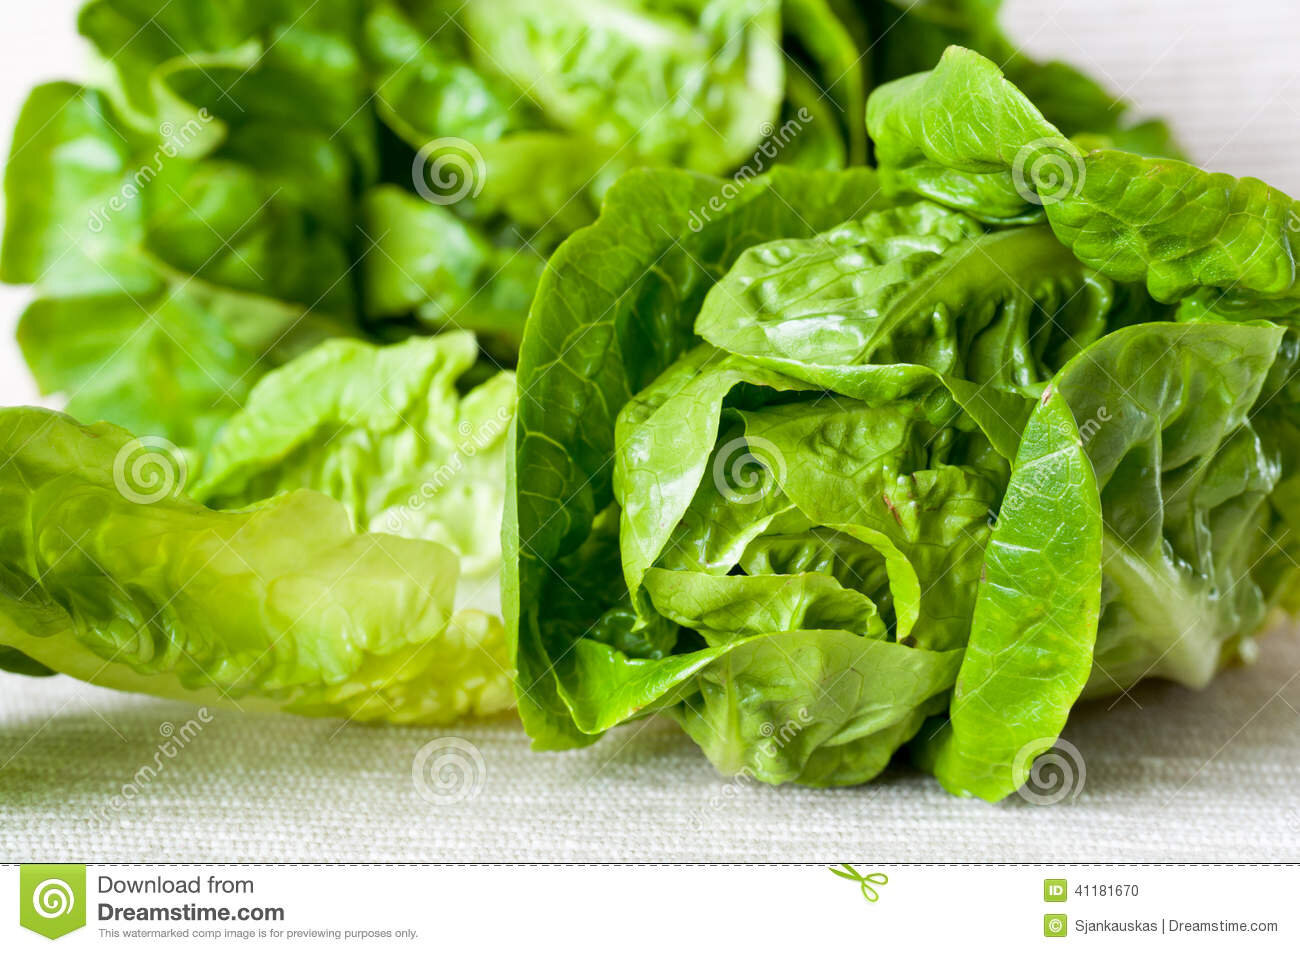 Little gem lettuce.jpeg